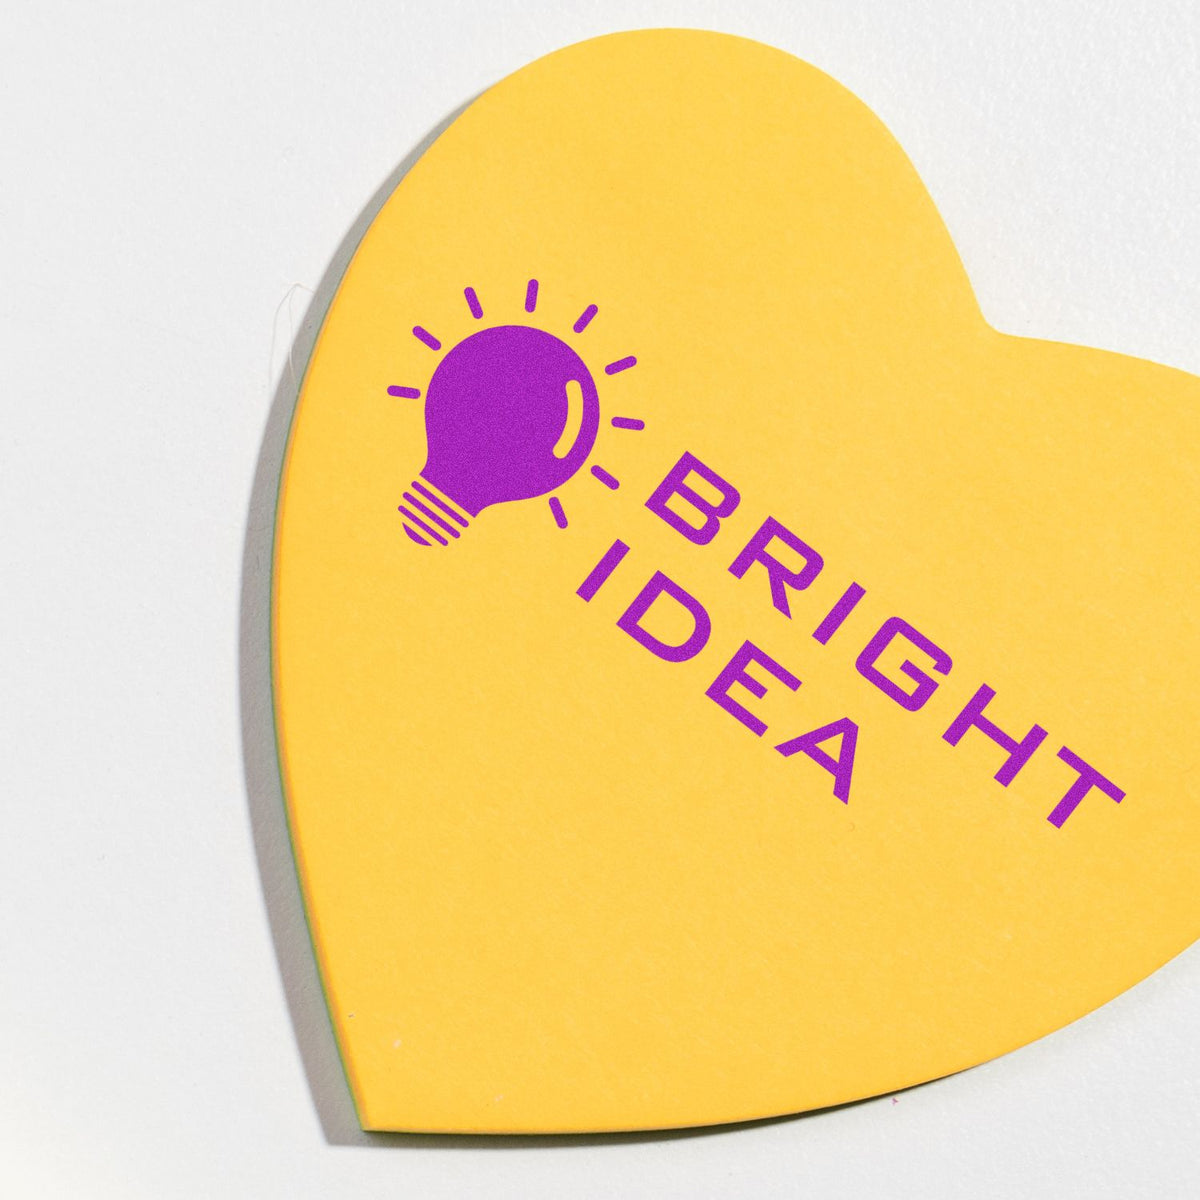 Bright Idea Rubber Stamp In Use